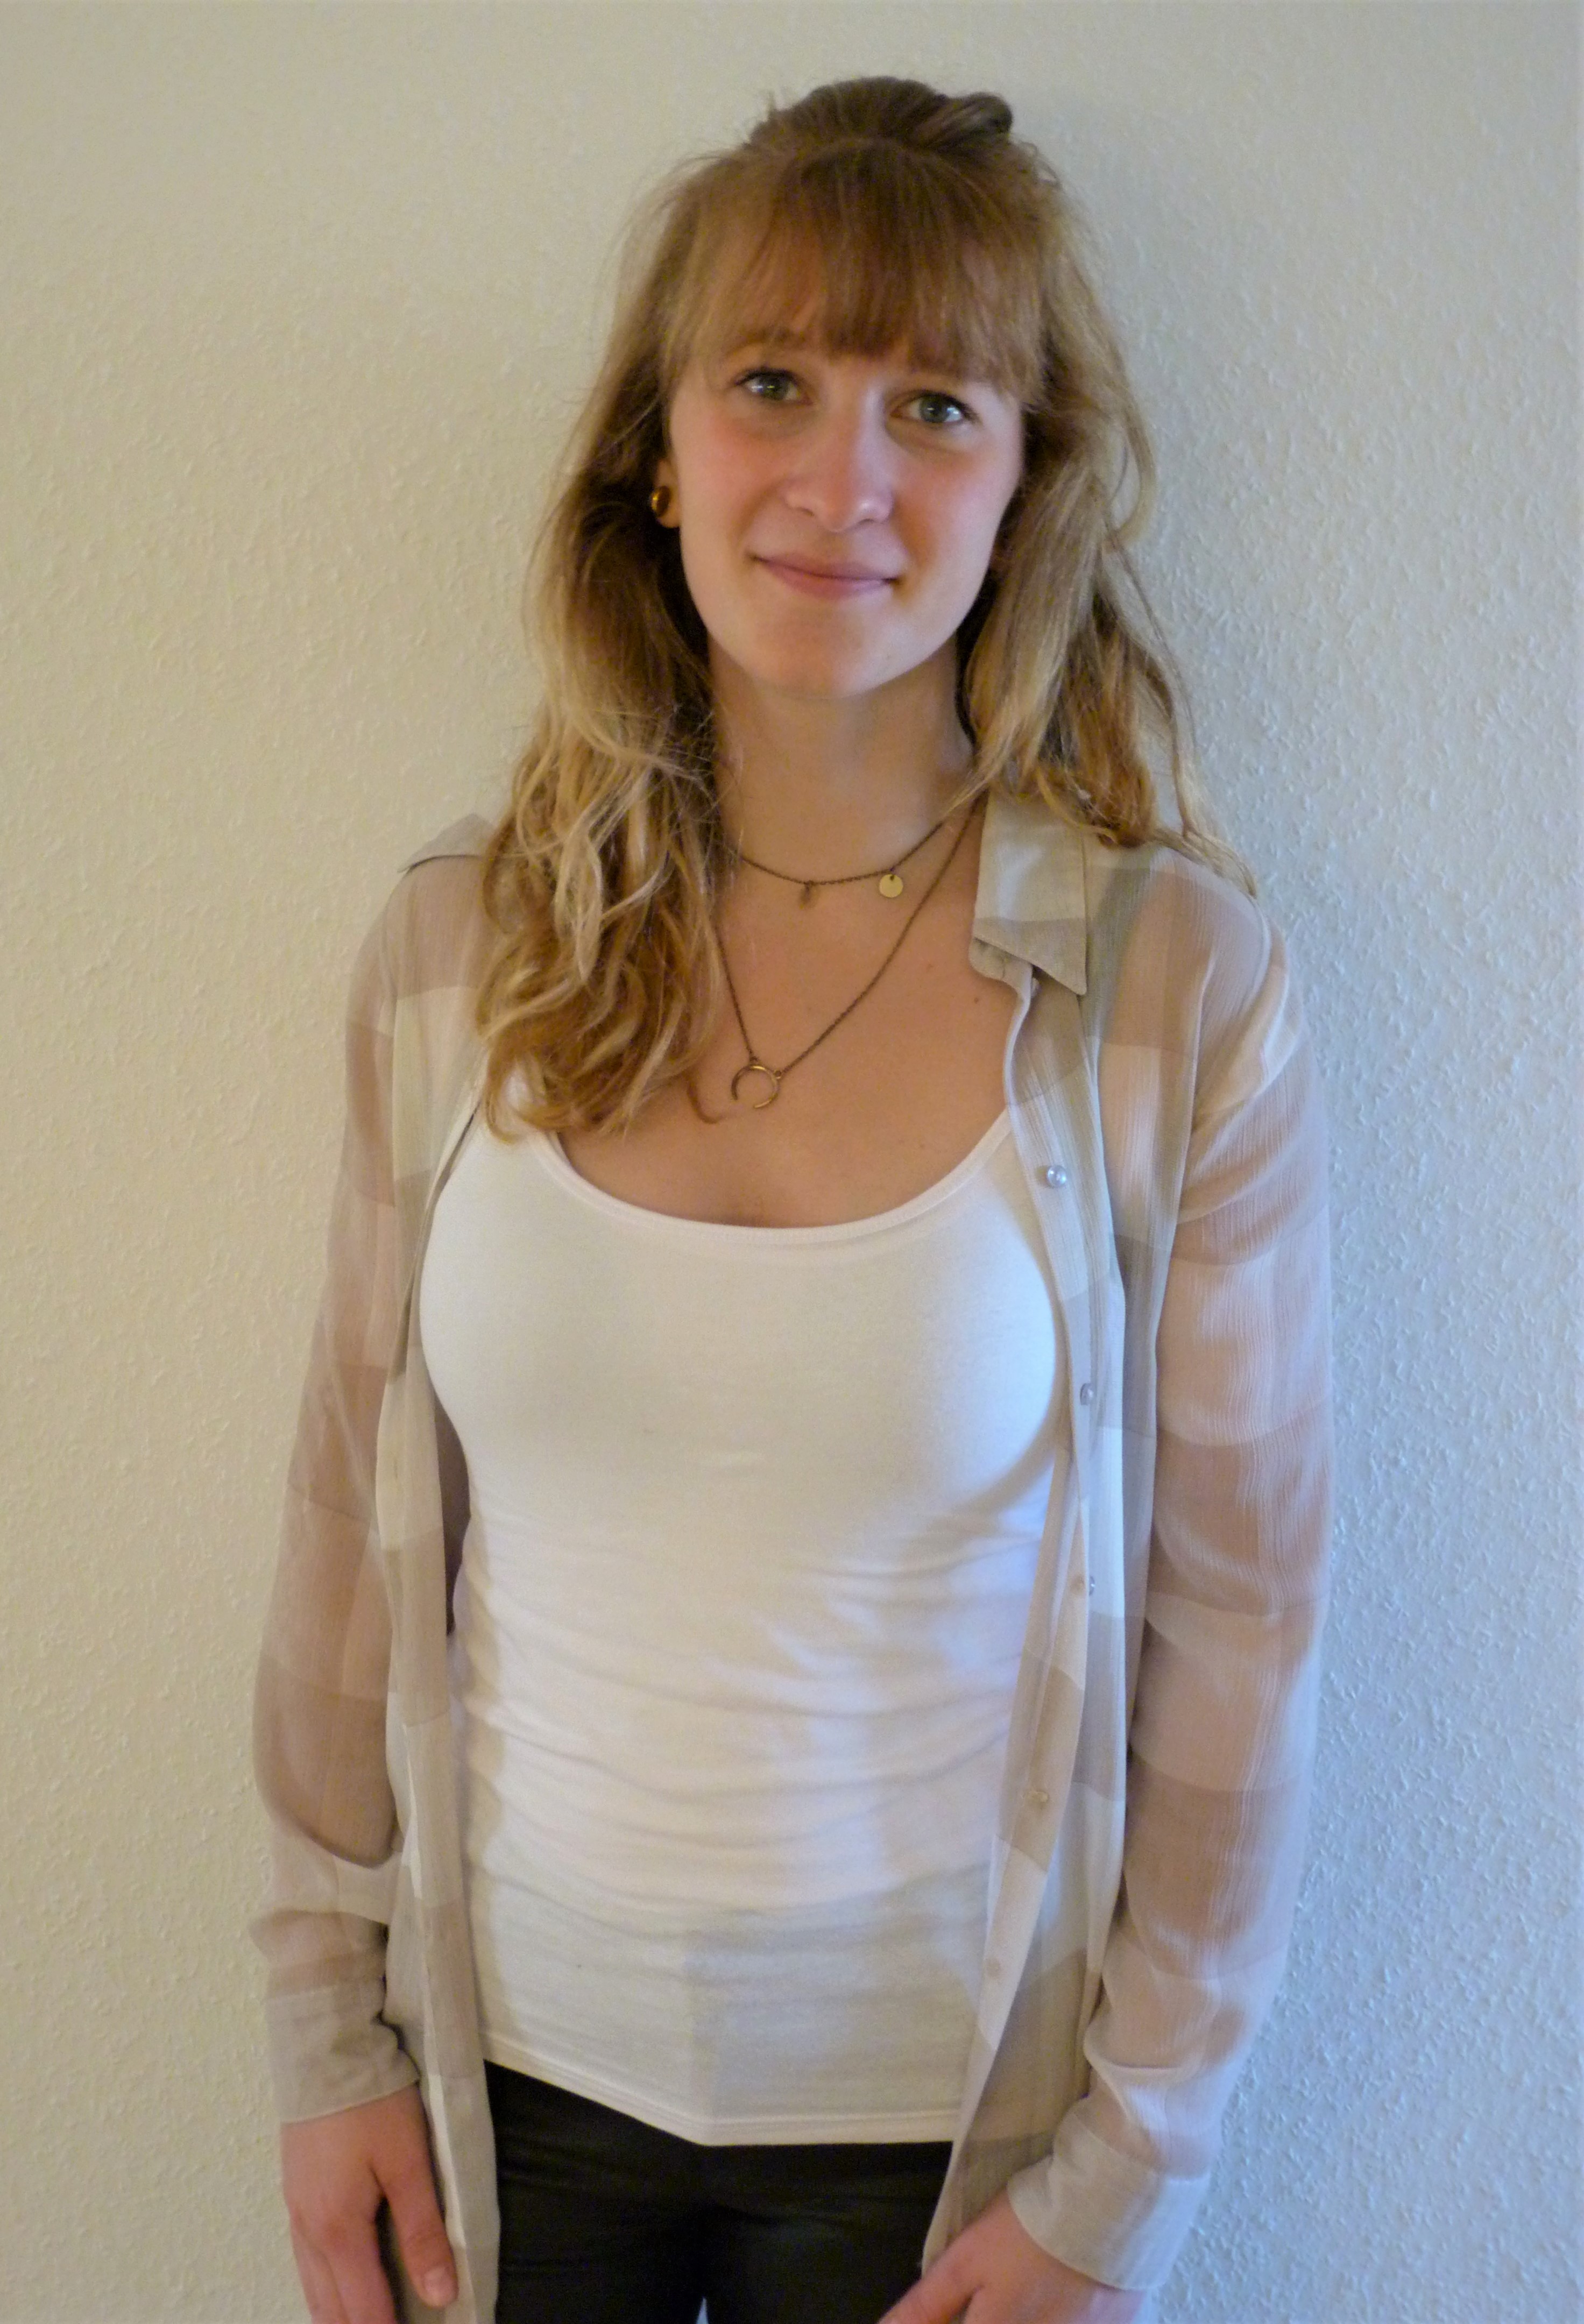 Hostess Alicia aus Koblenz, Konfektion 36, Studium Sozialwissenschaften